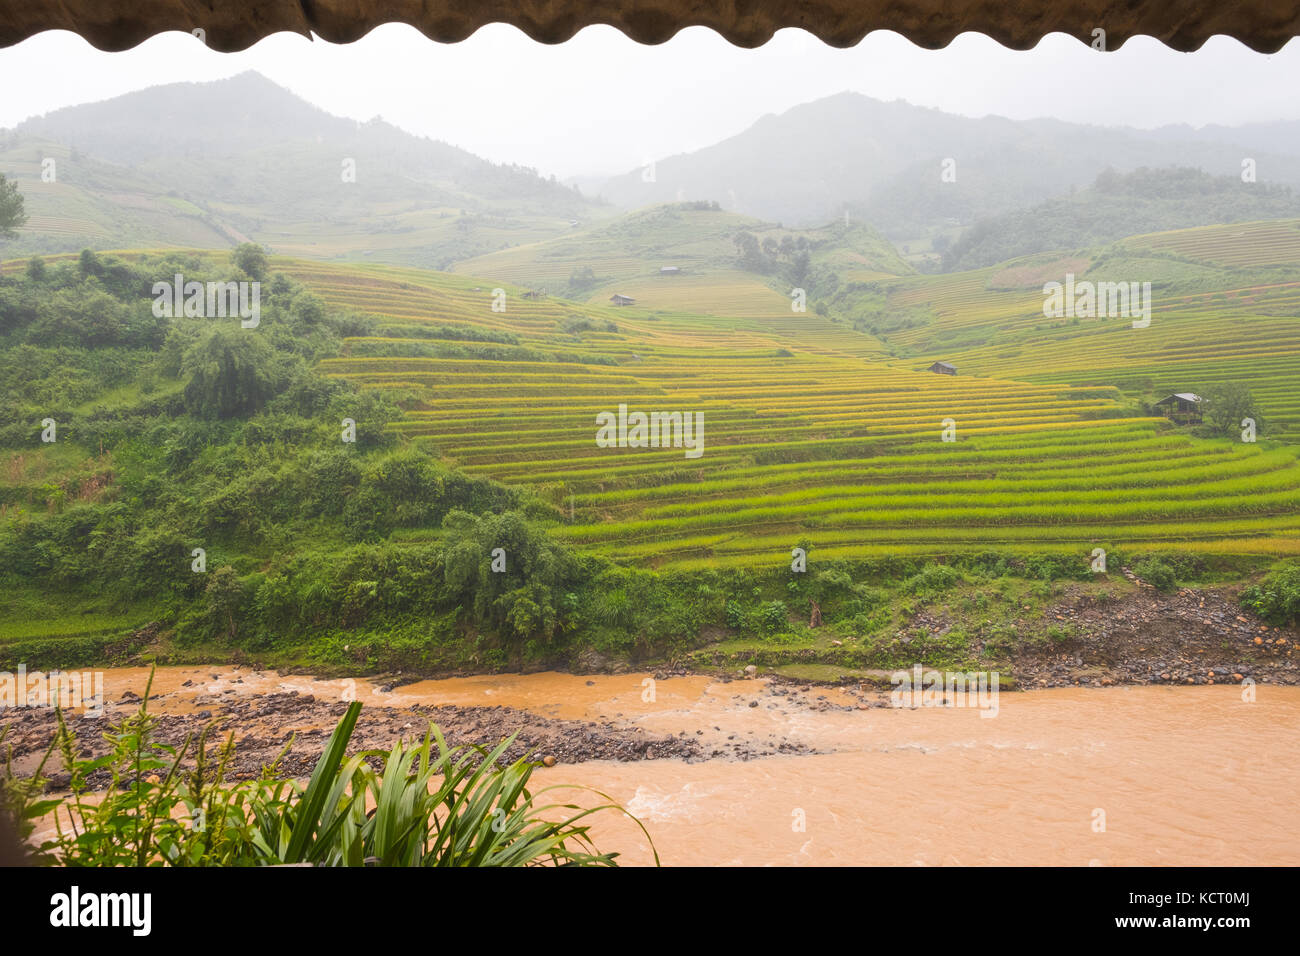 Magnifique paysage de champs de riz en terrasse mu cang chai, Vietnam Banque D'Images